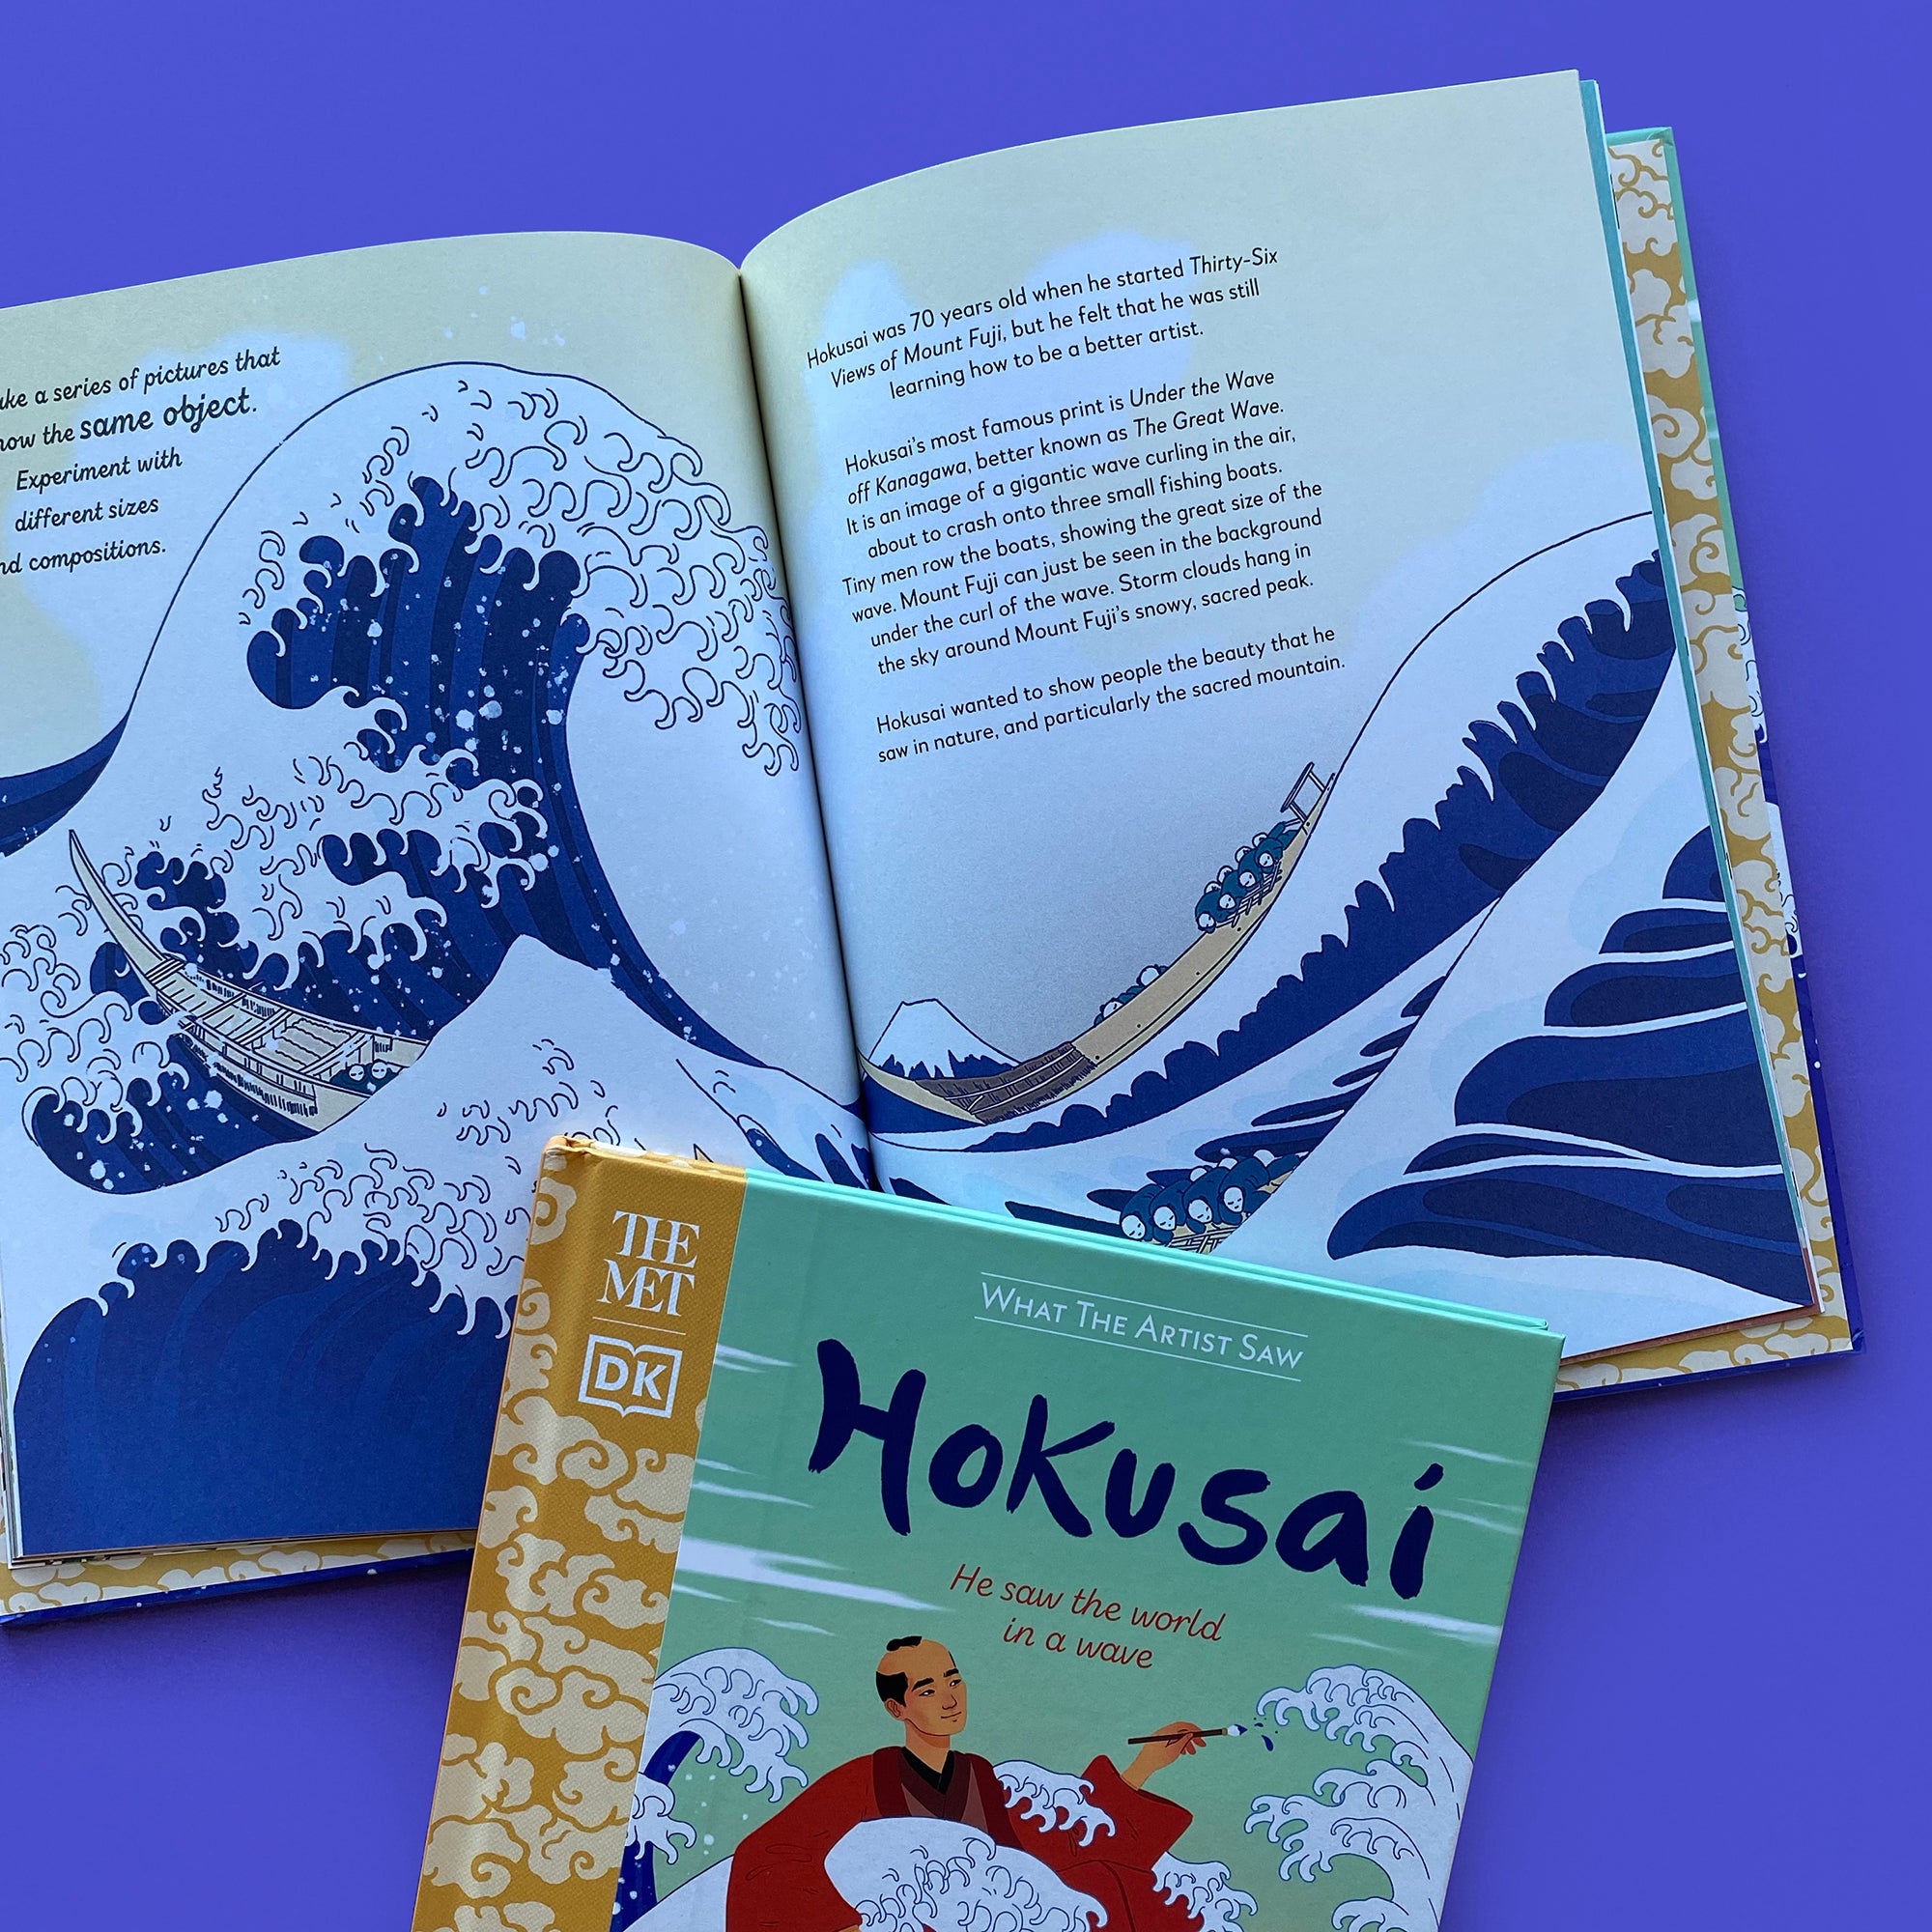 The MET - Hokusai